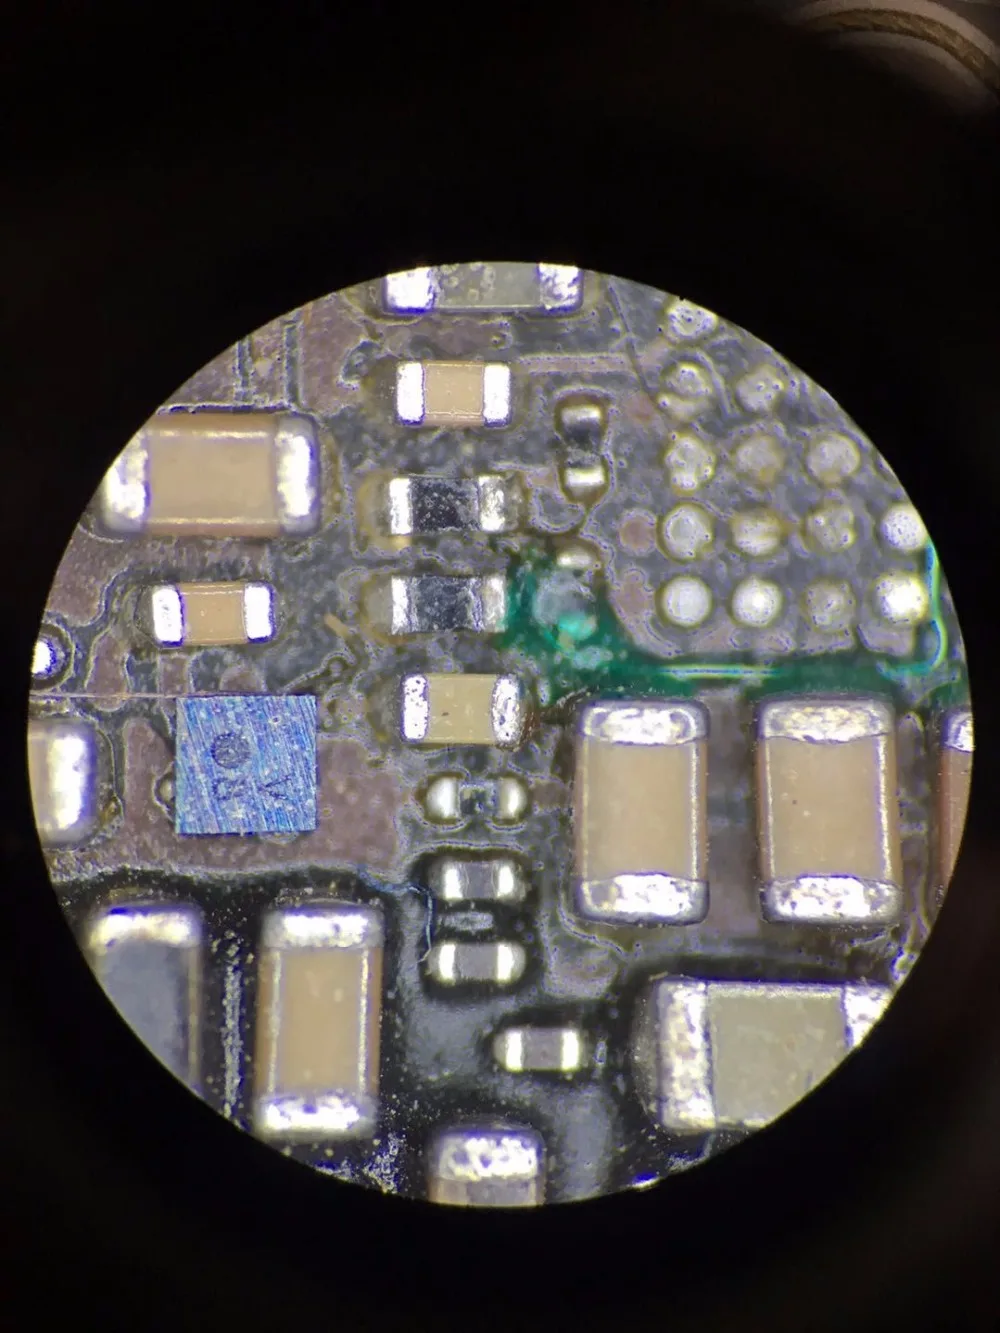 Промышленный стерео тринокулярный микроскоп 7X-45X непрерывное увеличение 56 светодиодный светильник с кольцом для пайки печатных плат Ремонт телефонов